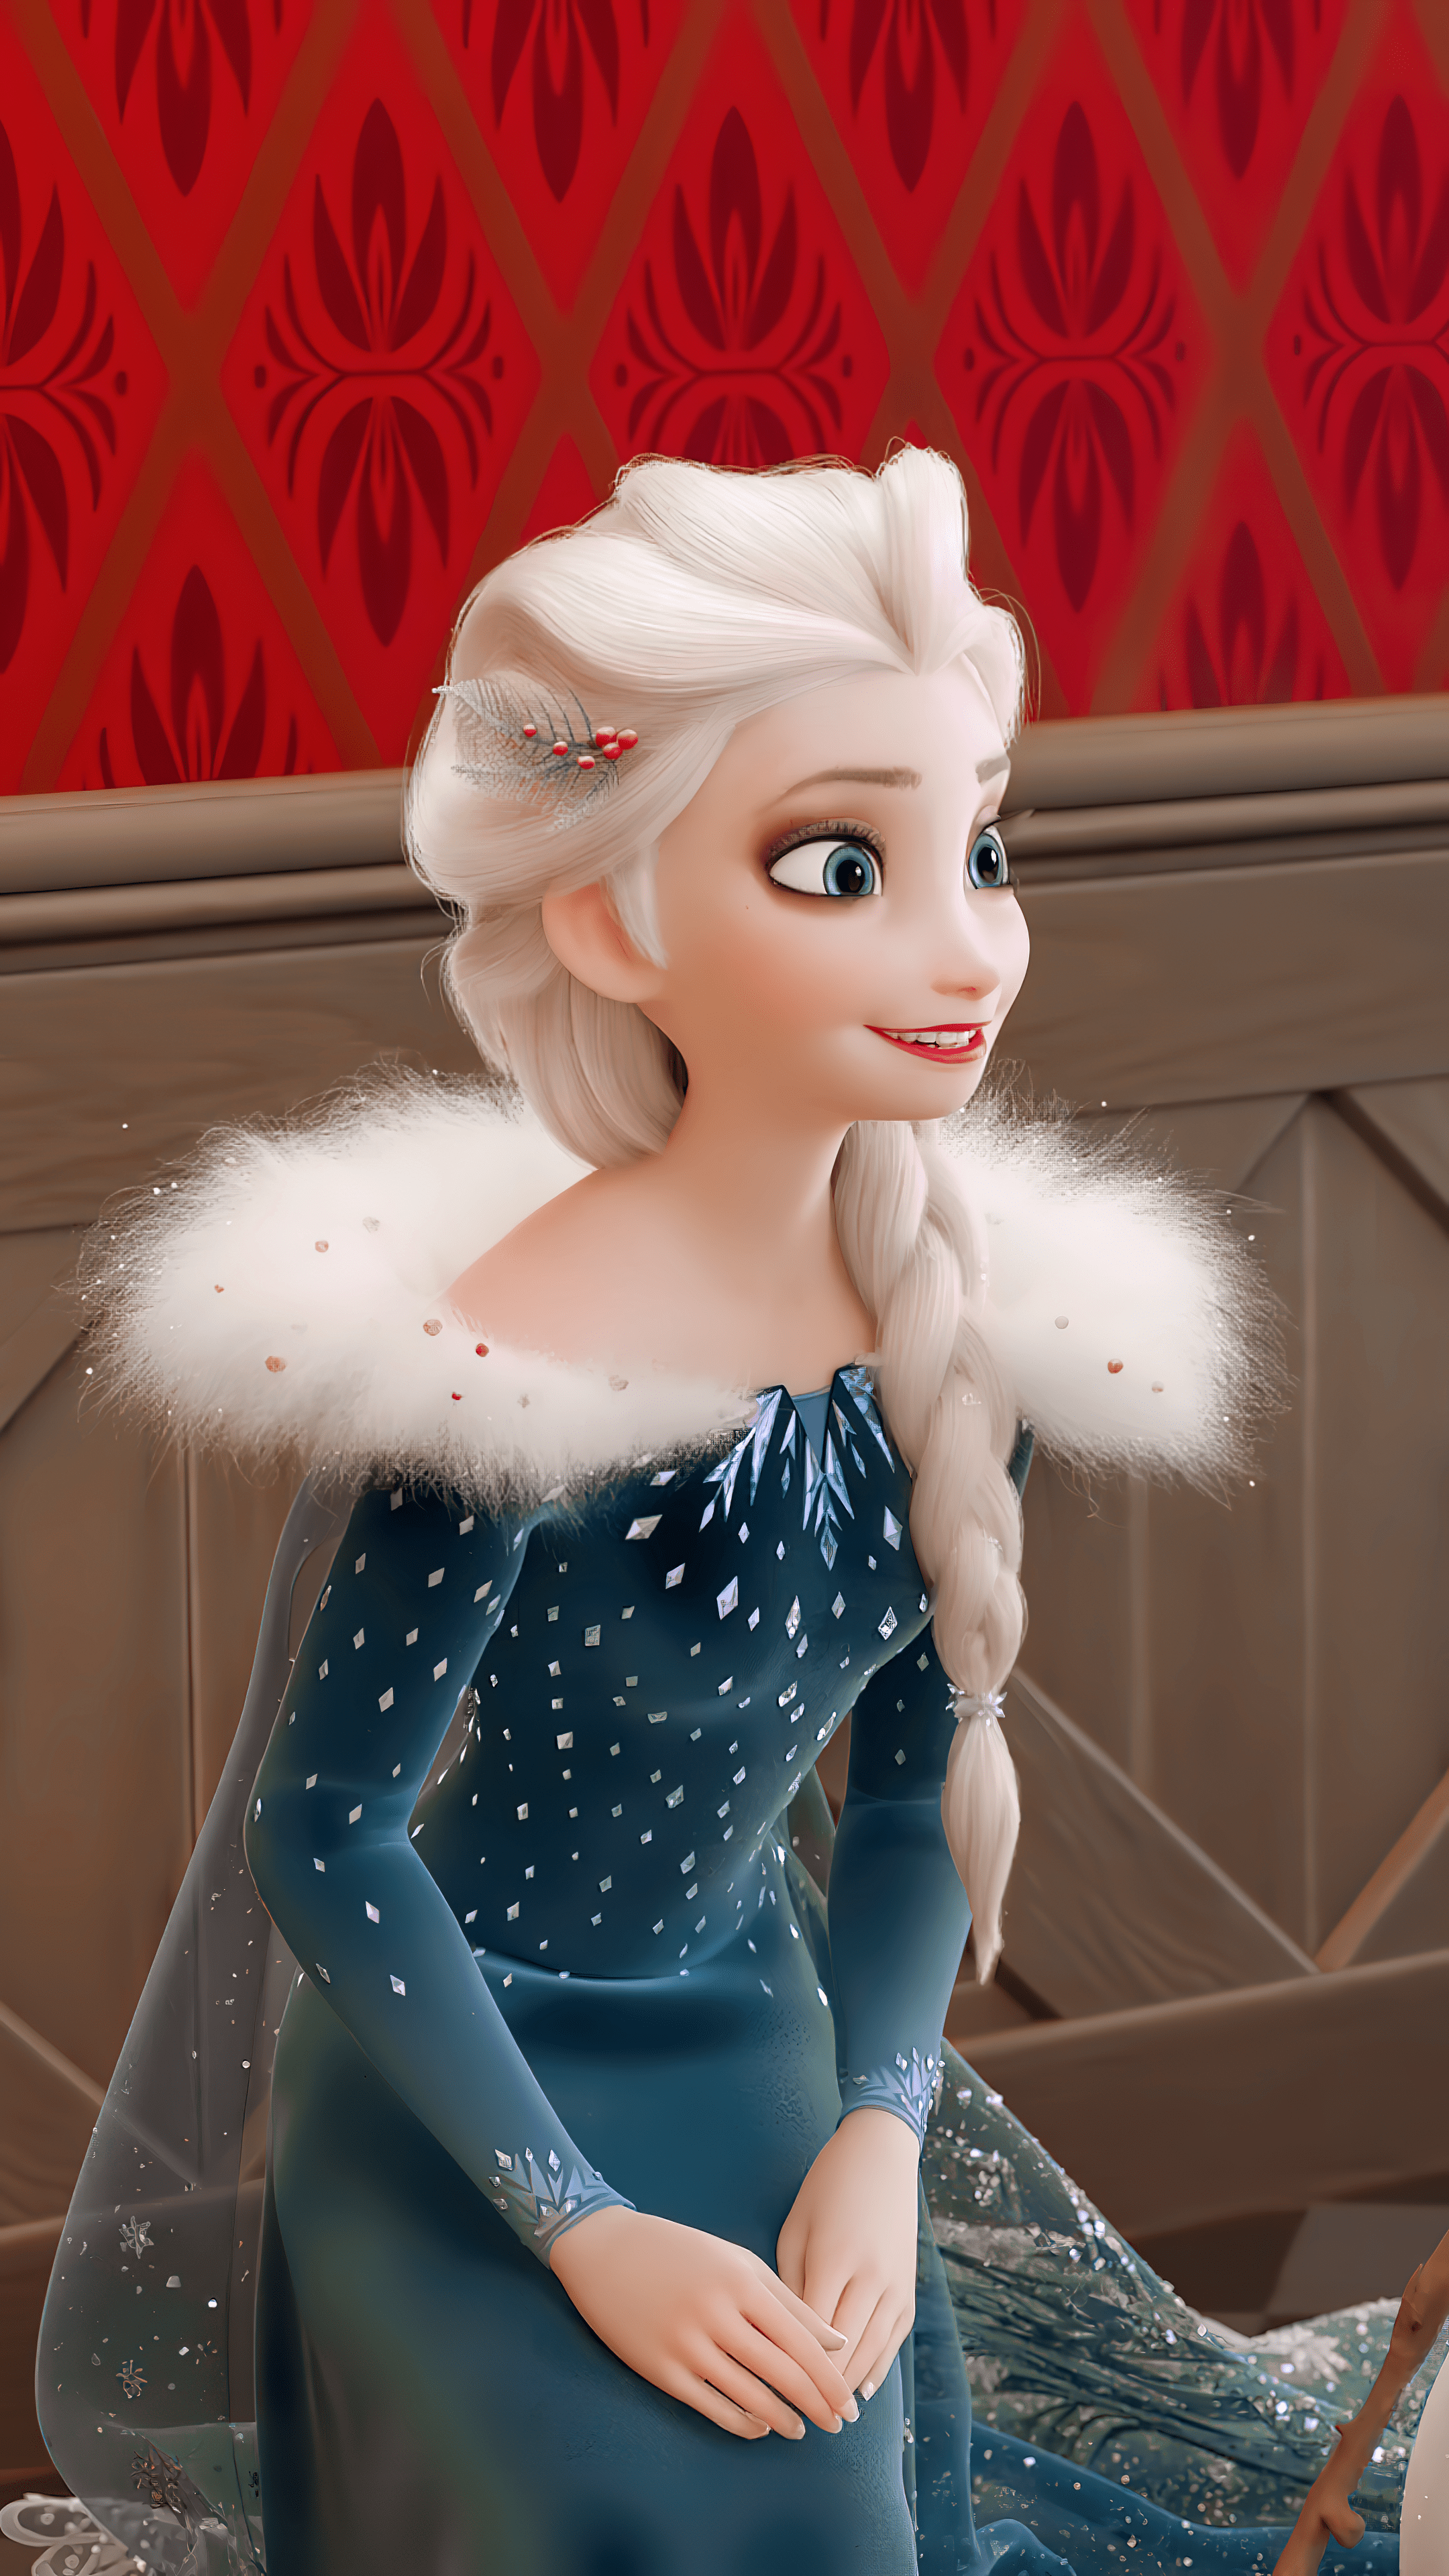 Elsa 4k wallpaper ❄